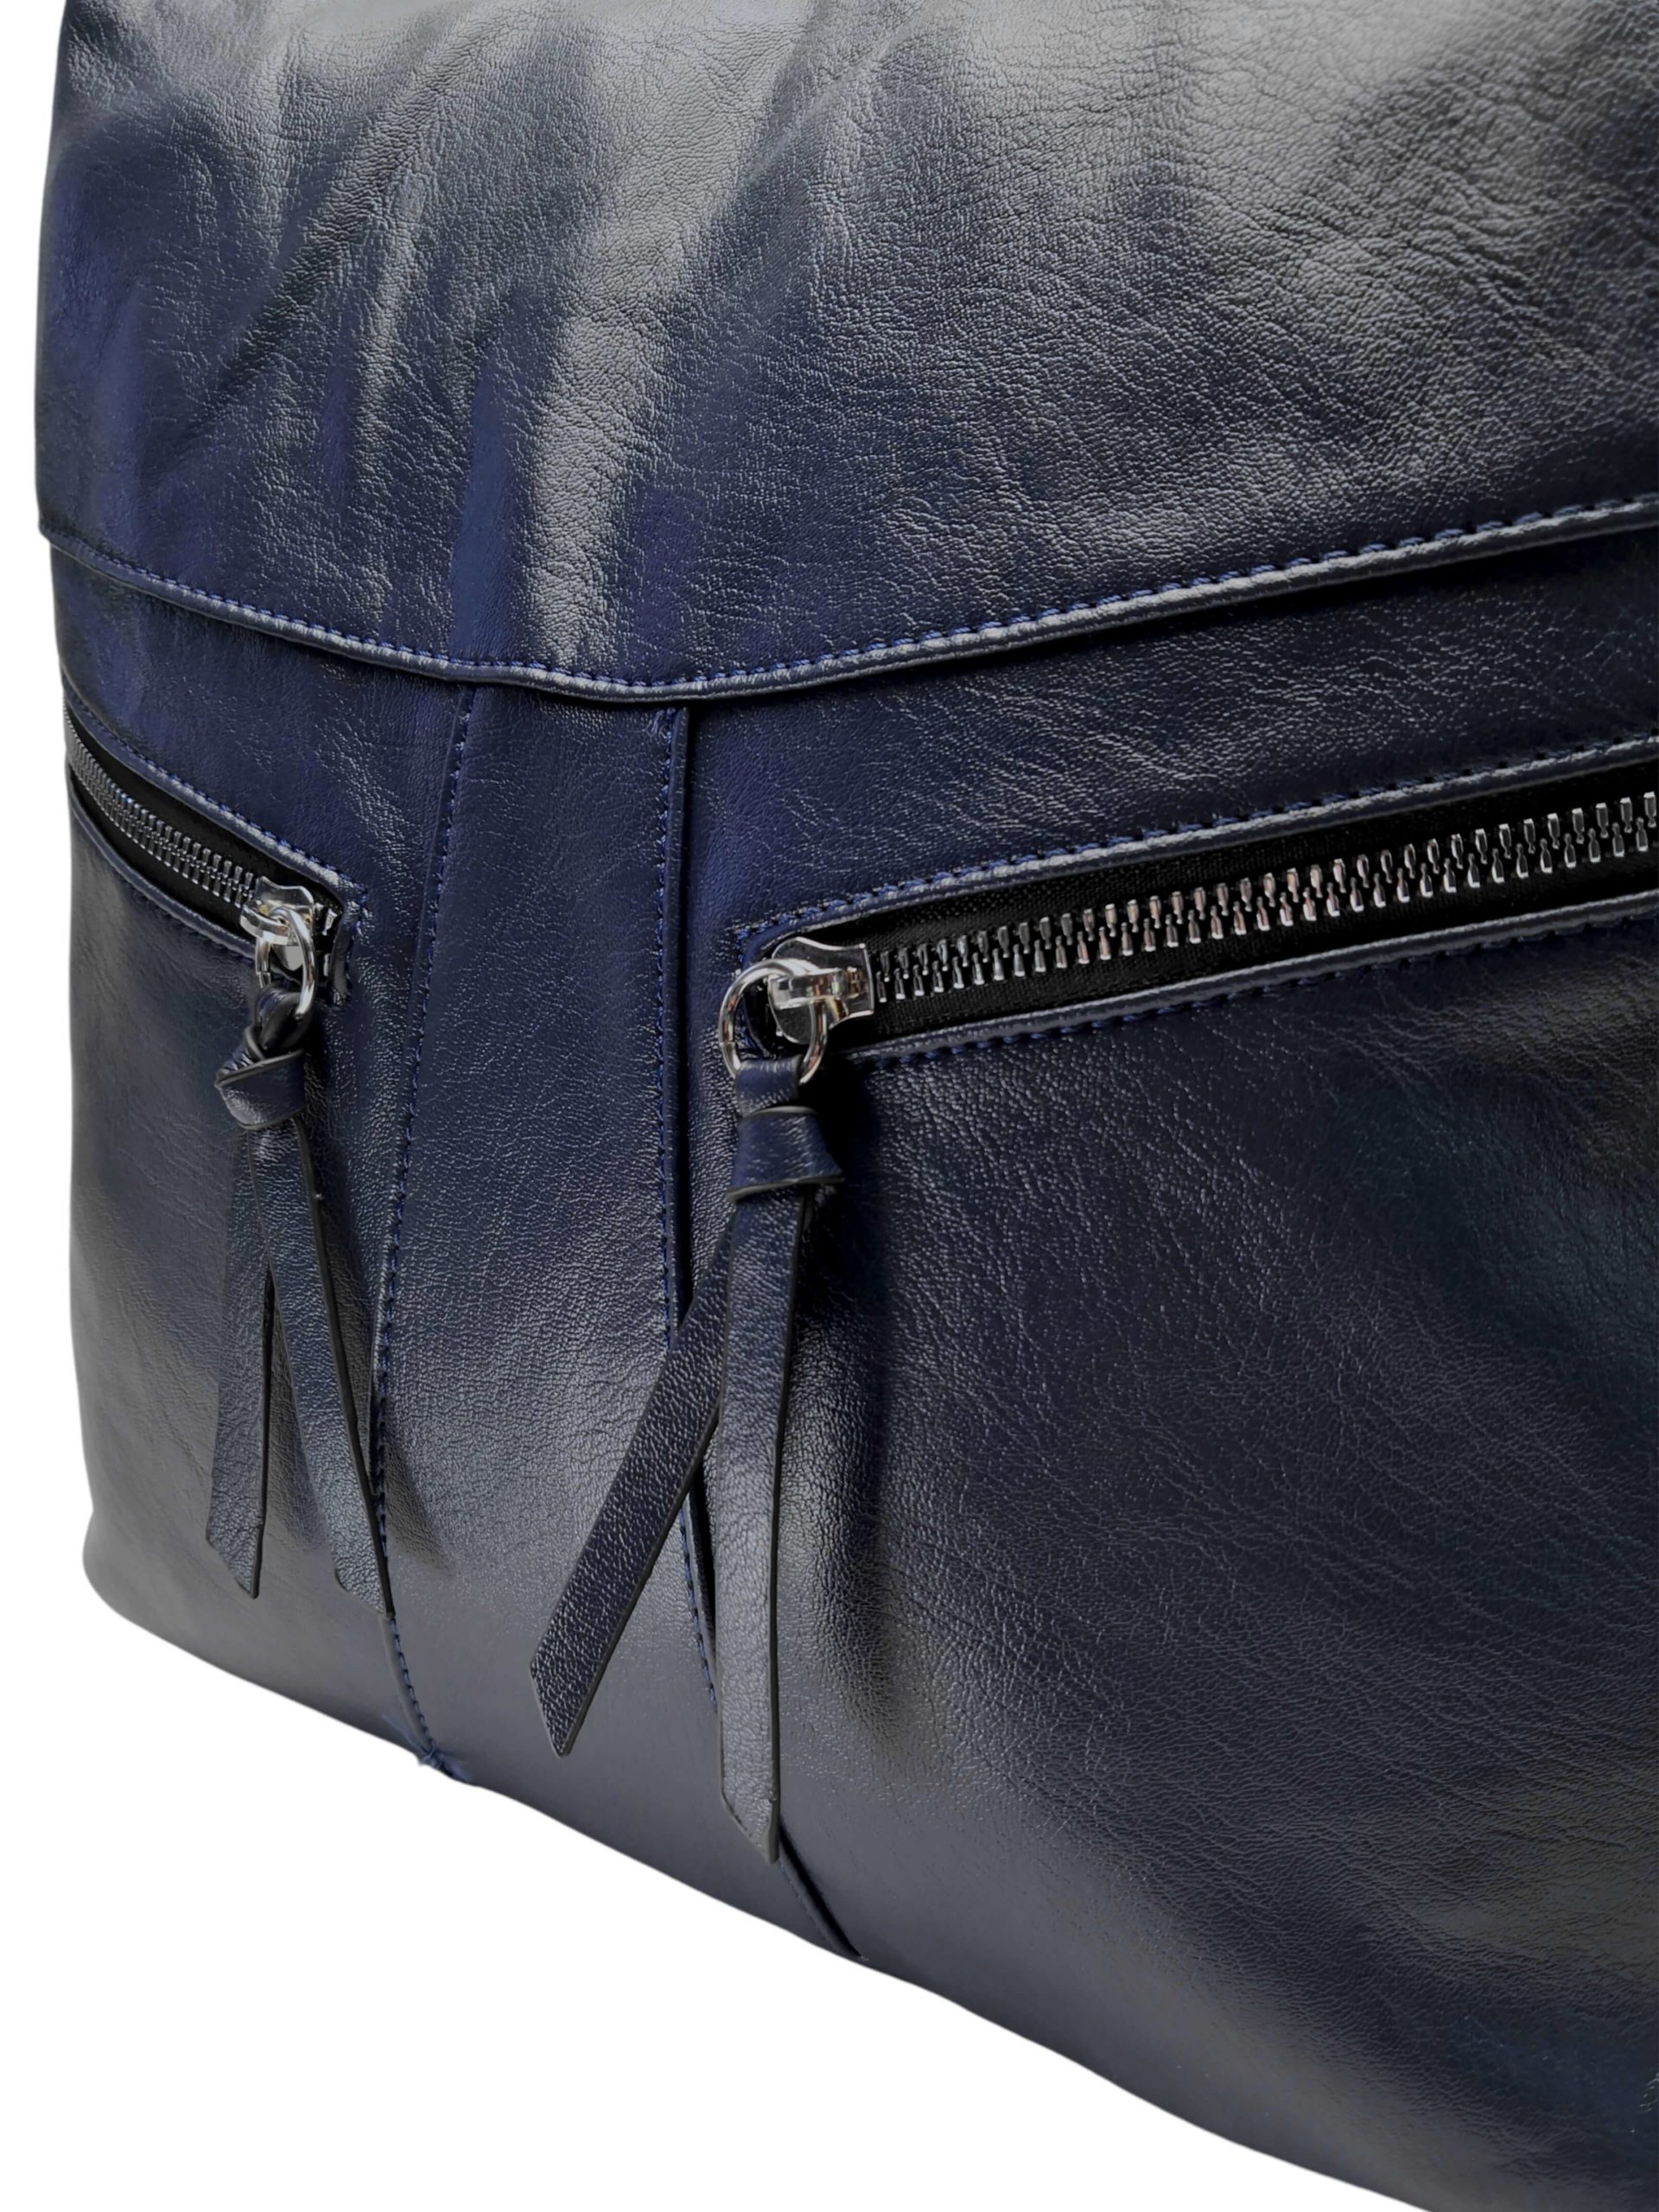 Velký tmavě modrý kabelko-batoh 2v1 s šikmými kapsami, Tapple, H18076O, detail kabelko-batohu